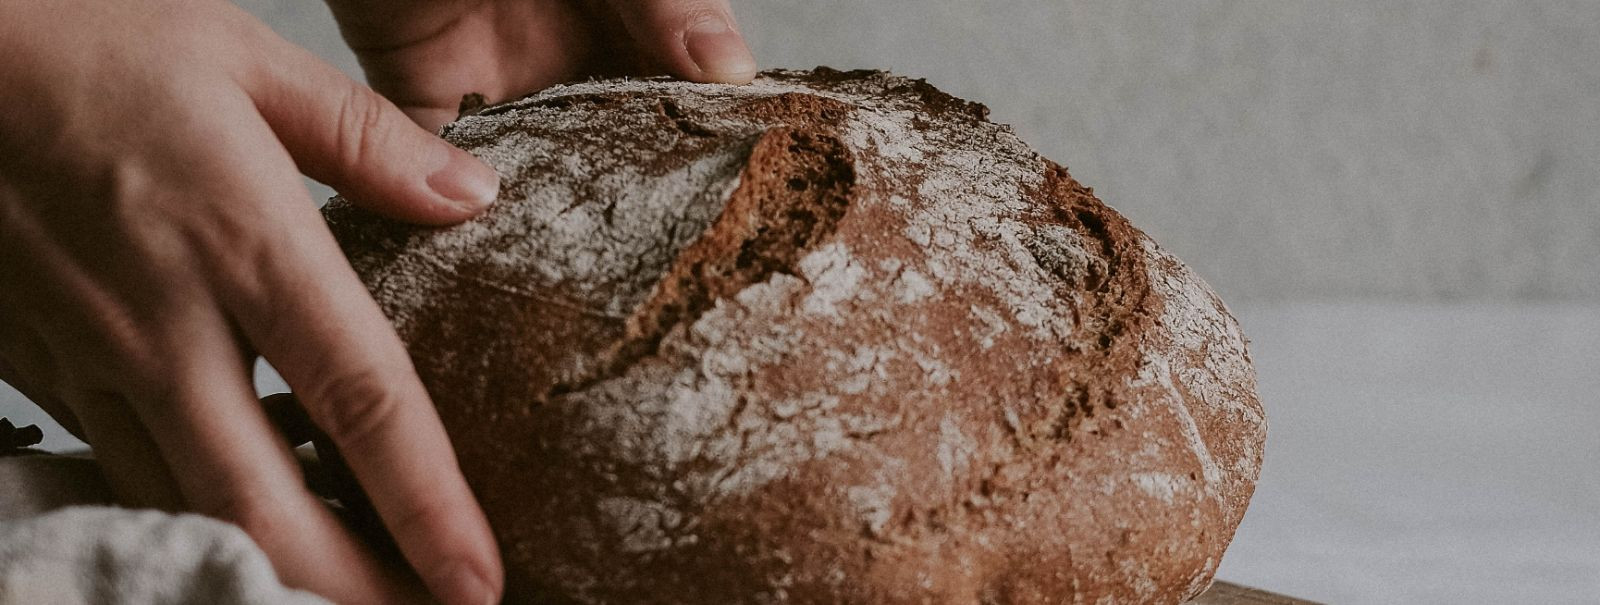 Leivaküpsetamine on kodus üks populaarsemaid toiduvalmistamise viise, kuna see annab sulle võimaluse valmistada omaenda leiba, mis on palju maitsvam ja tervisli